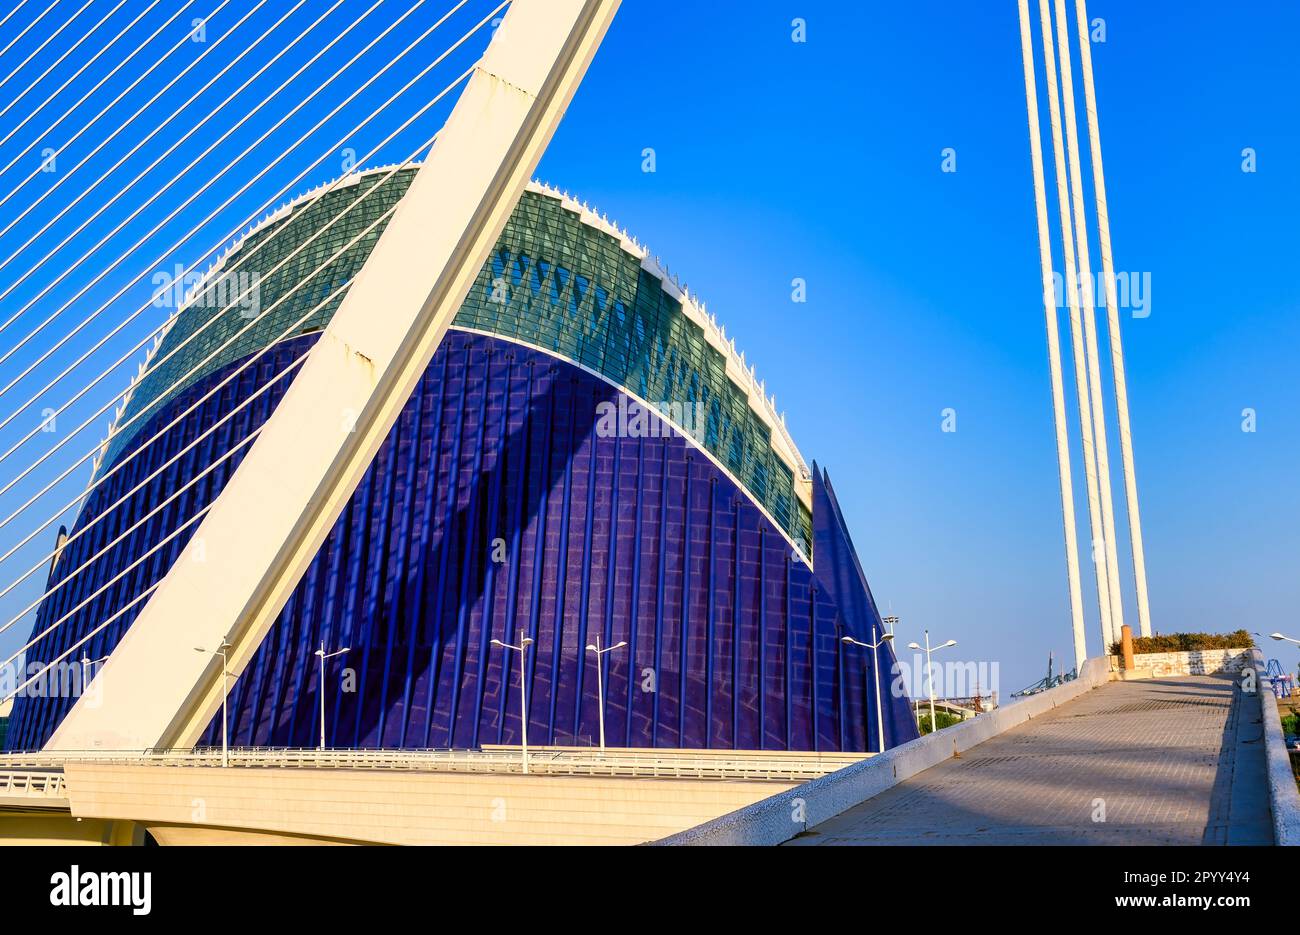 Valencia, Spagna - 17 luglio 2022: Caratteristiche architettoniche del ponte Assut de l'Or e dell'edificio l'Àgora. Il punto di riferimento nazionale è un importante attror turistico Foto Stock